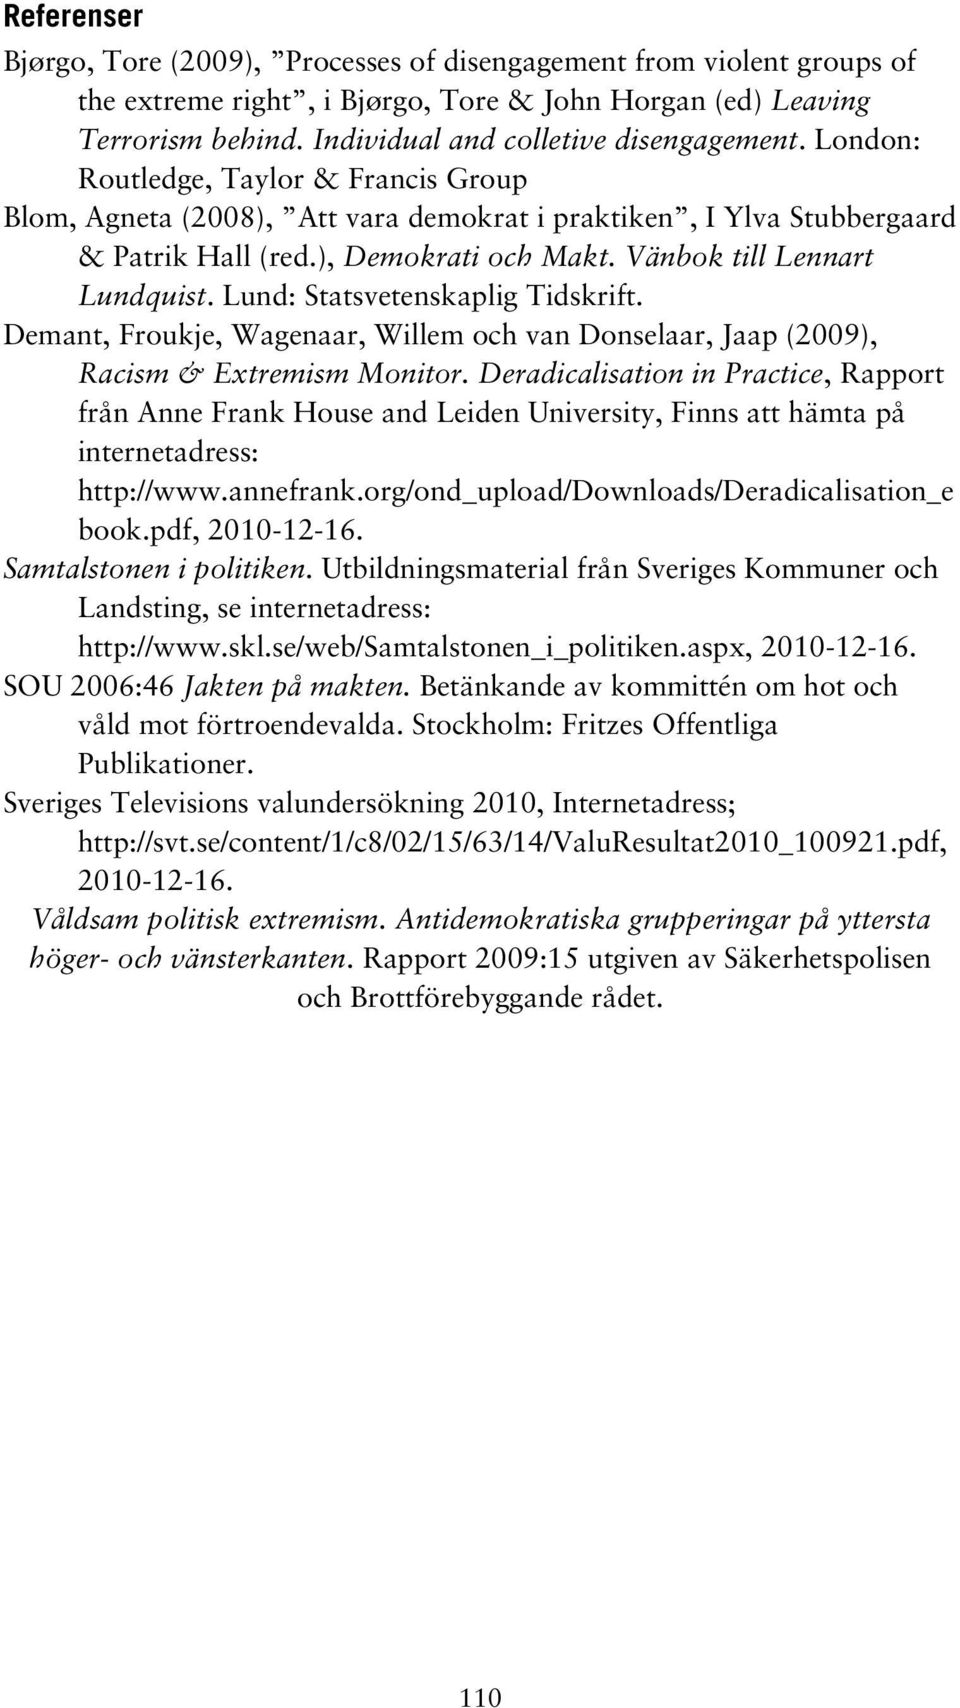 Lund: Statsvetenskaplig Tidskrift. Demant, Froukje, Wagenaar, Willem och van Donselaar, Jaap (2009), Racism & Extremism Monitor.